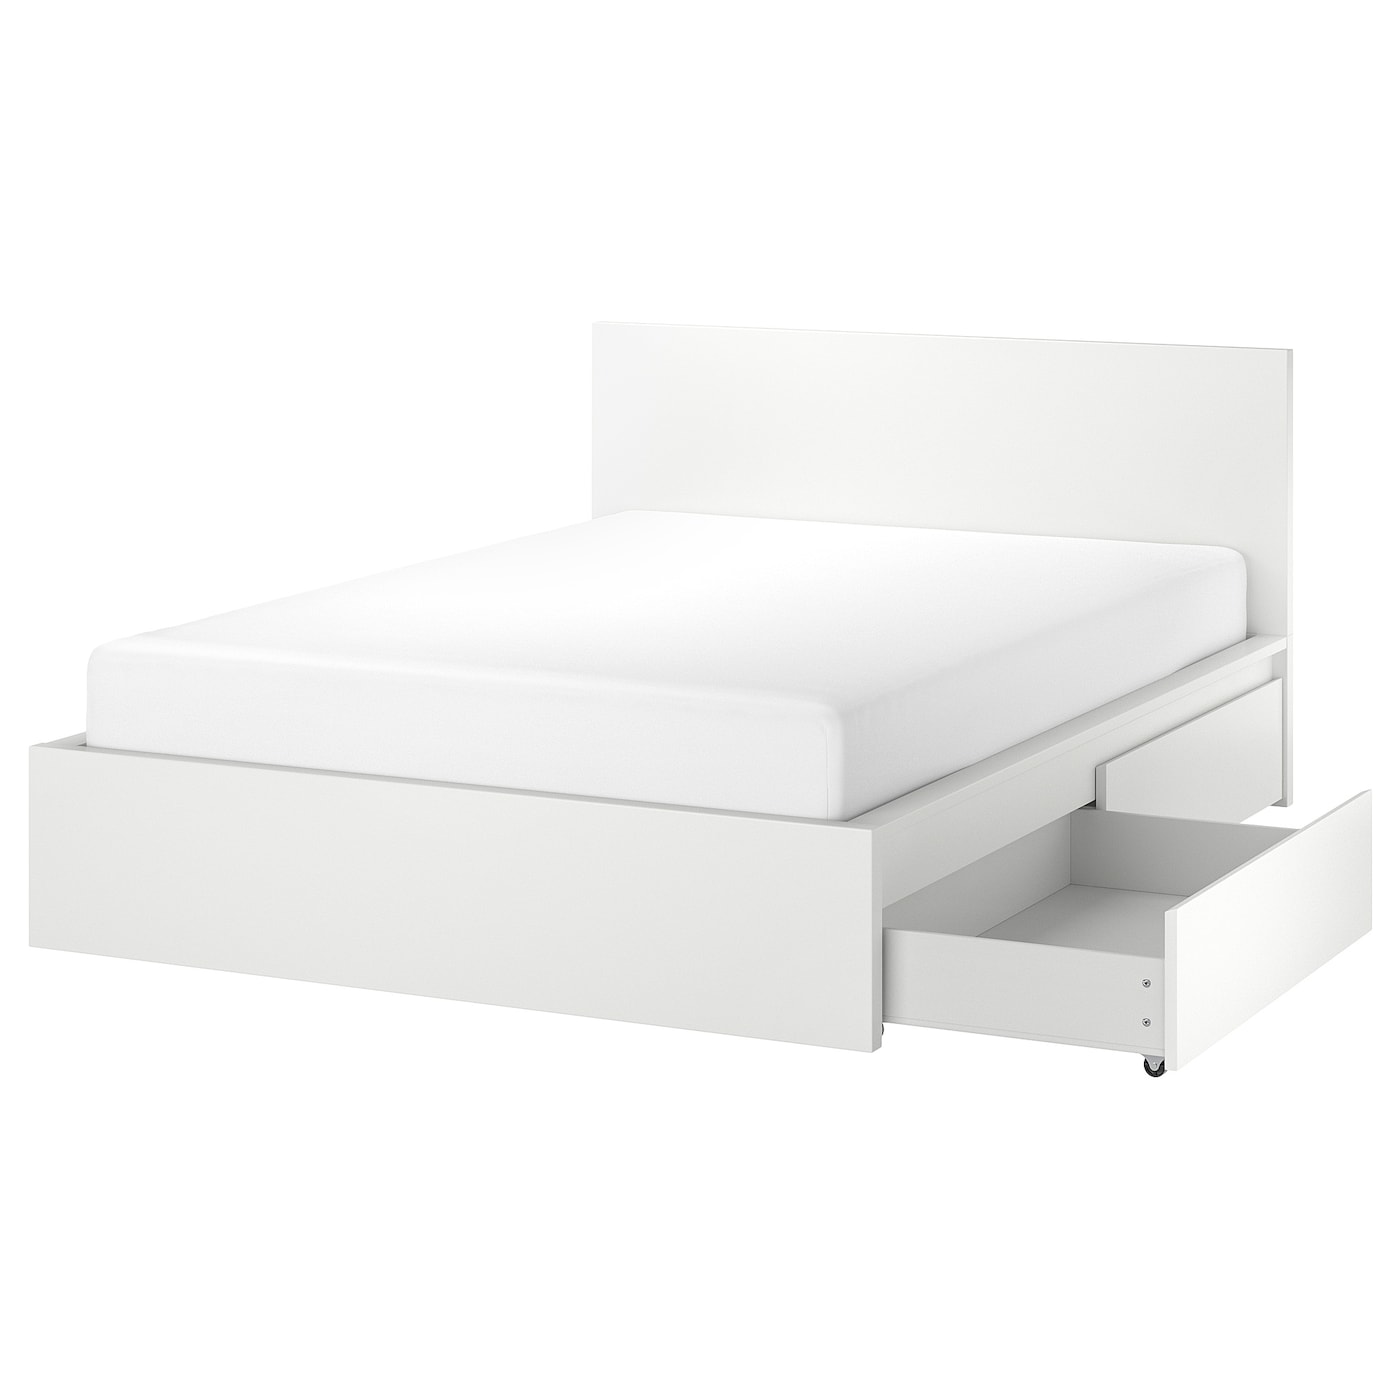 Каркас кровати с 2 ящиками для хранения - IKEA MALM/LОNSET/LÖNSET , 160х200 см, белый МАЛЬМ/ЛОНСЕТ ИКЕА